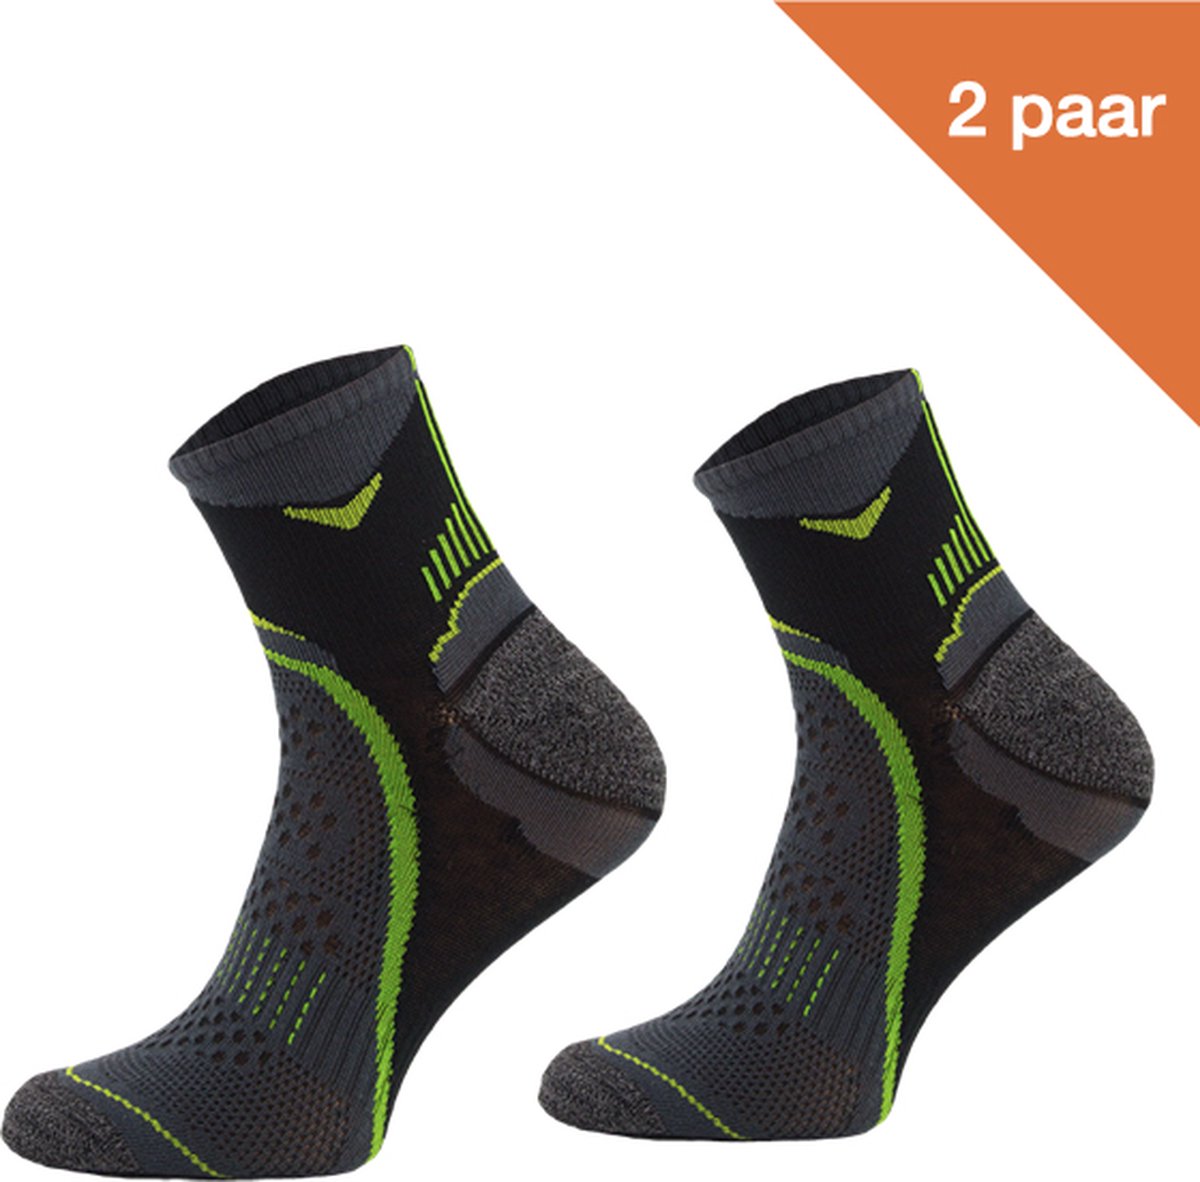 Comodo Hardloopsokken Polyester RUN2 - Zwart/Groen - 2 paar - Maat 43-46